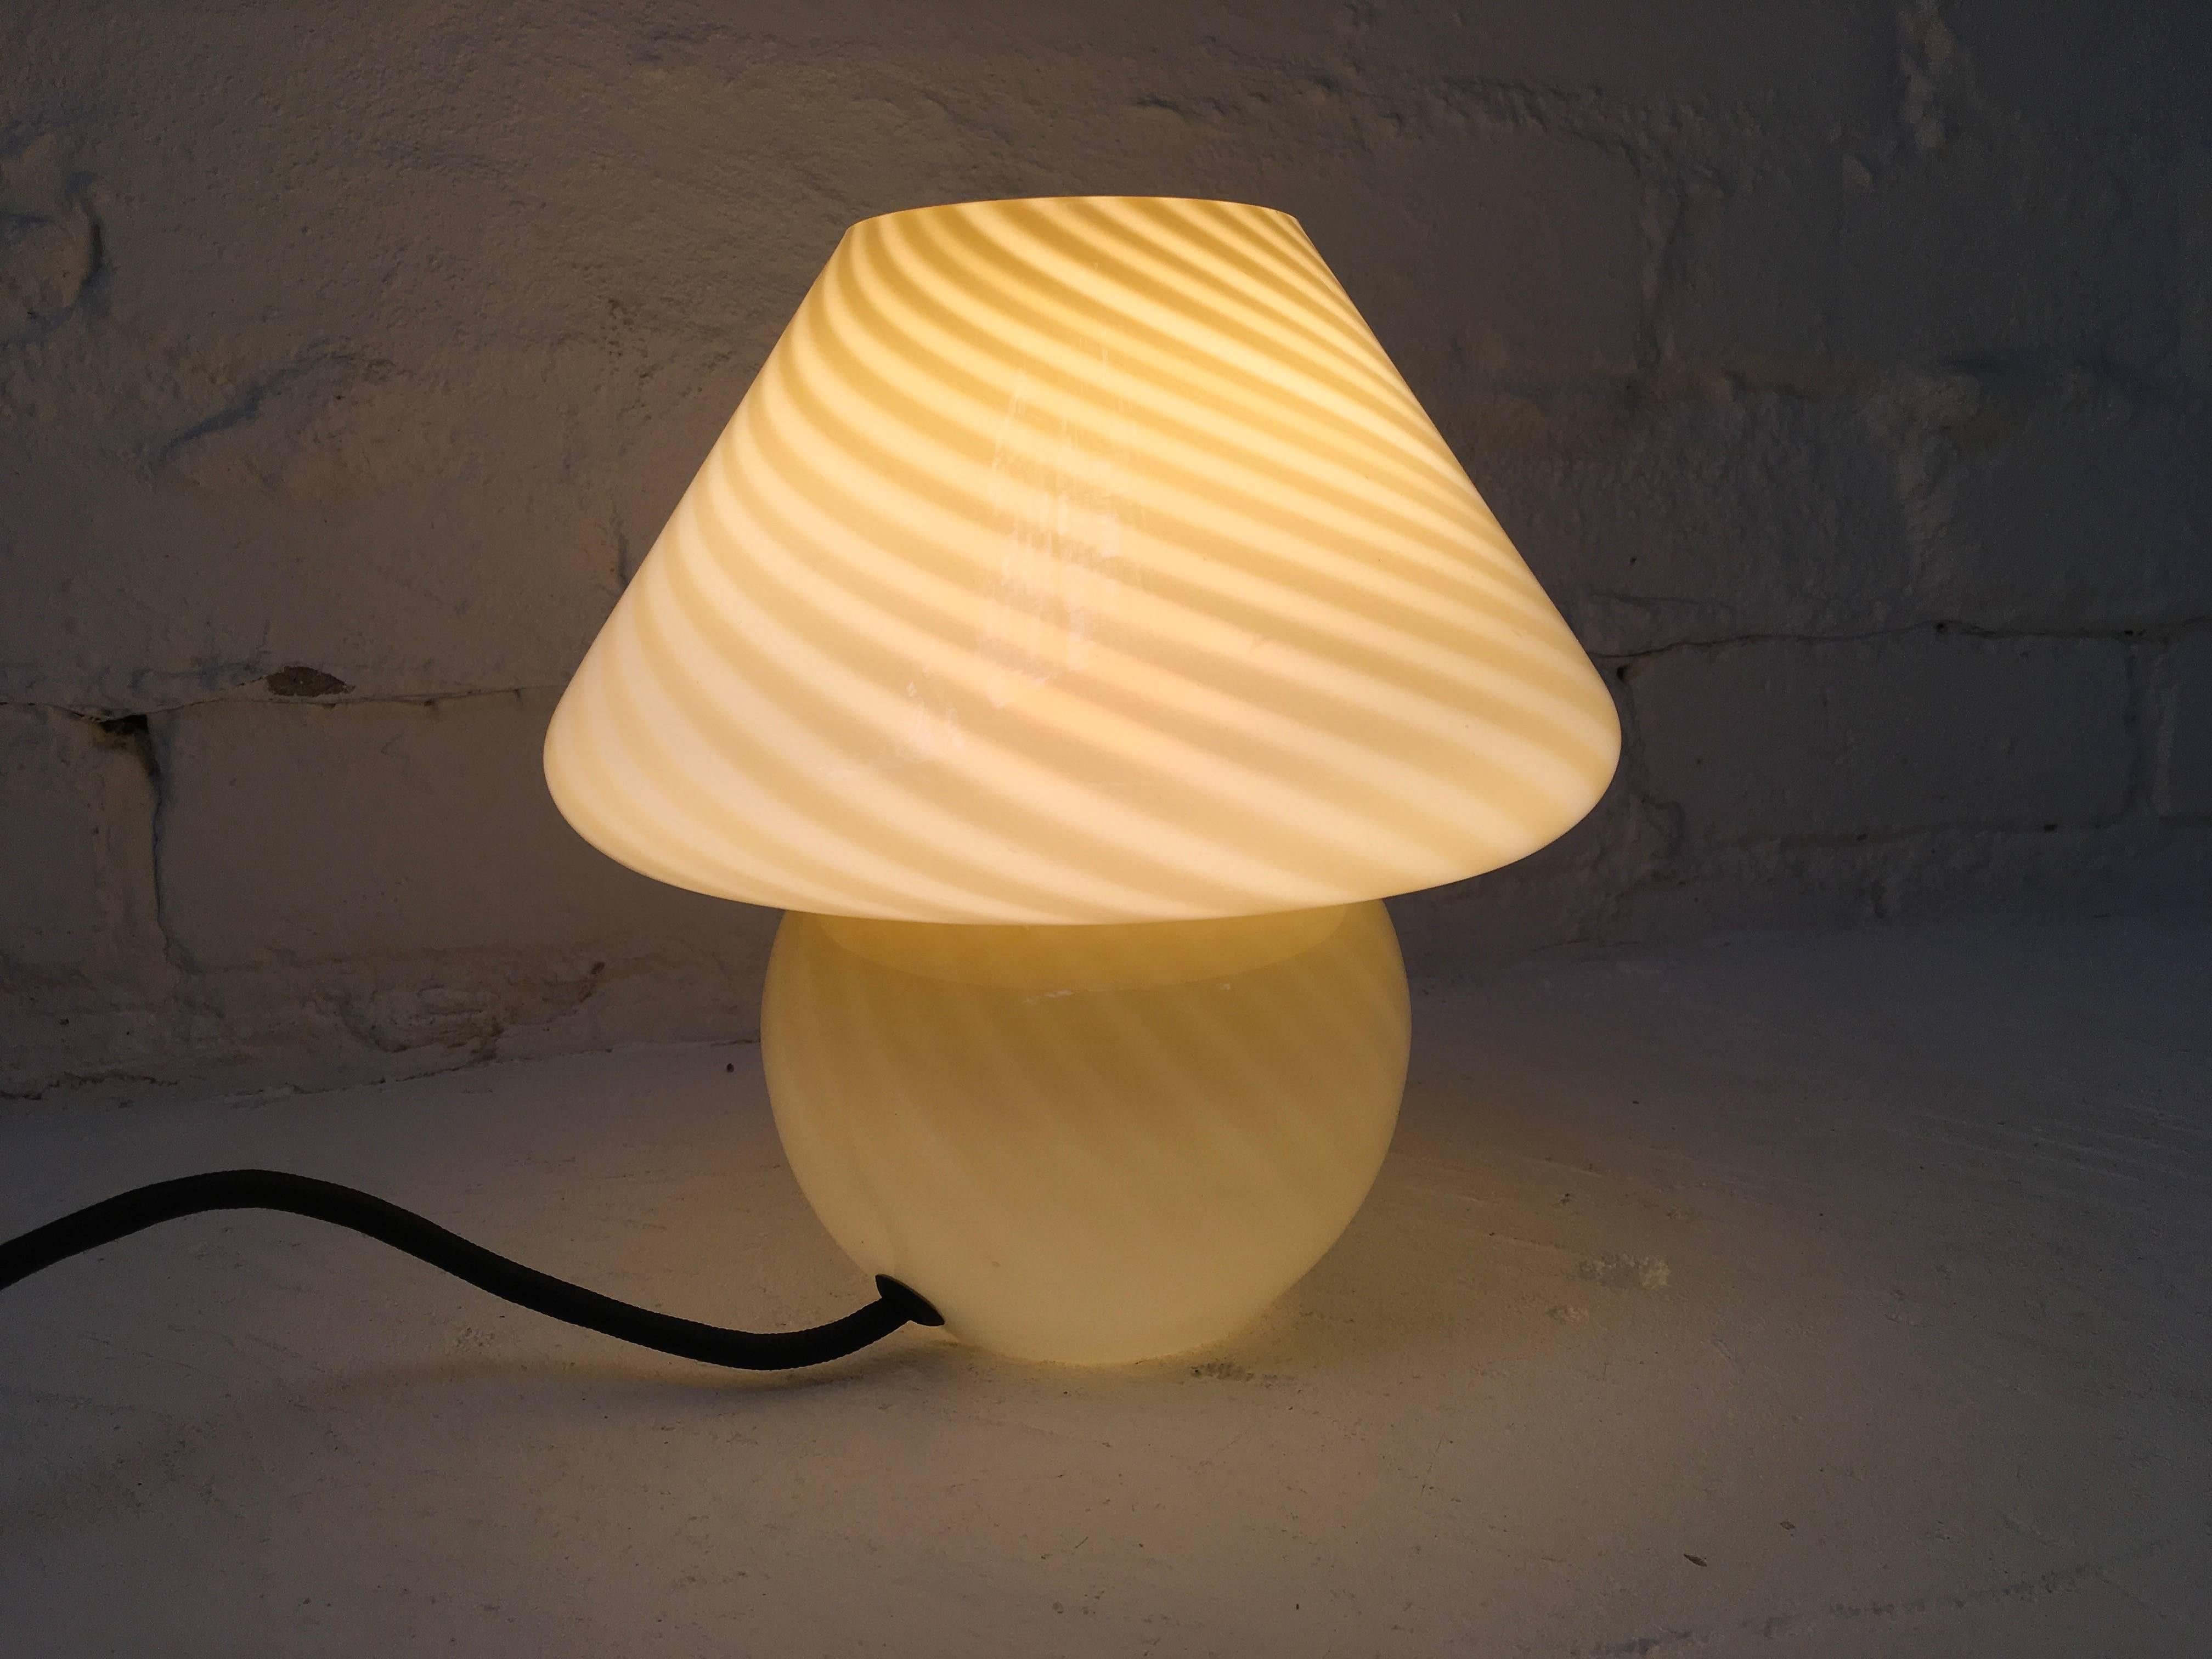 vetri murano mushroom lamp